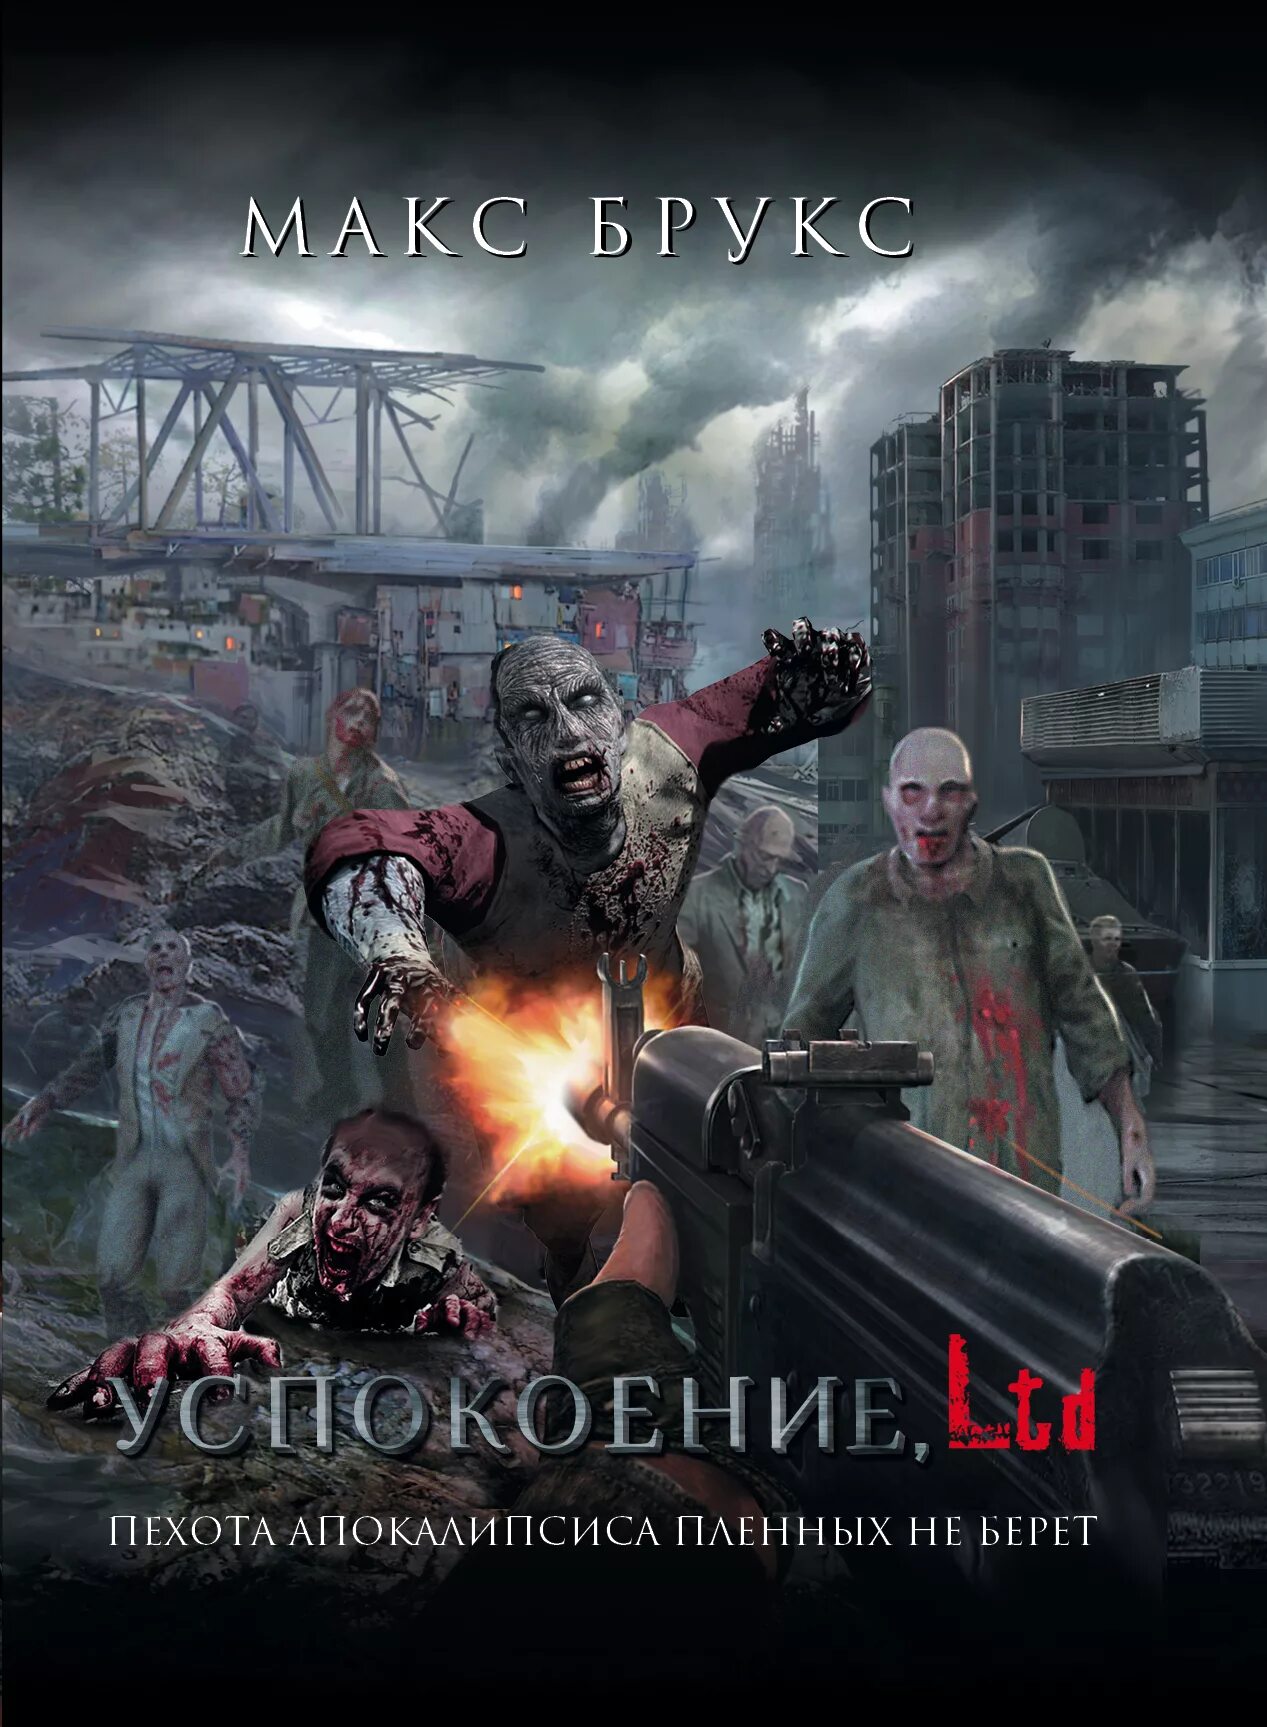 Апокалипсис книги авторы. Брукс Макс "успокоение, Ltd". Книги про зомби. Апокалипсис книга.